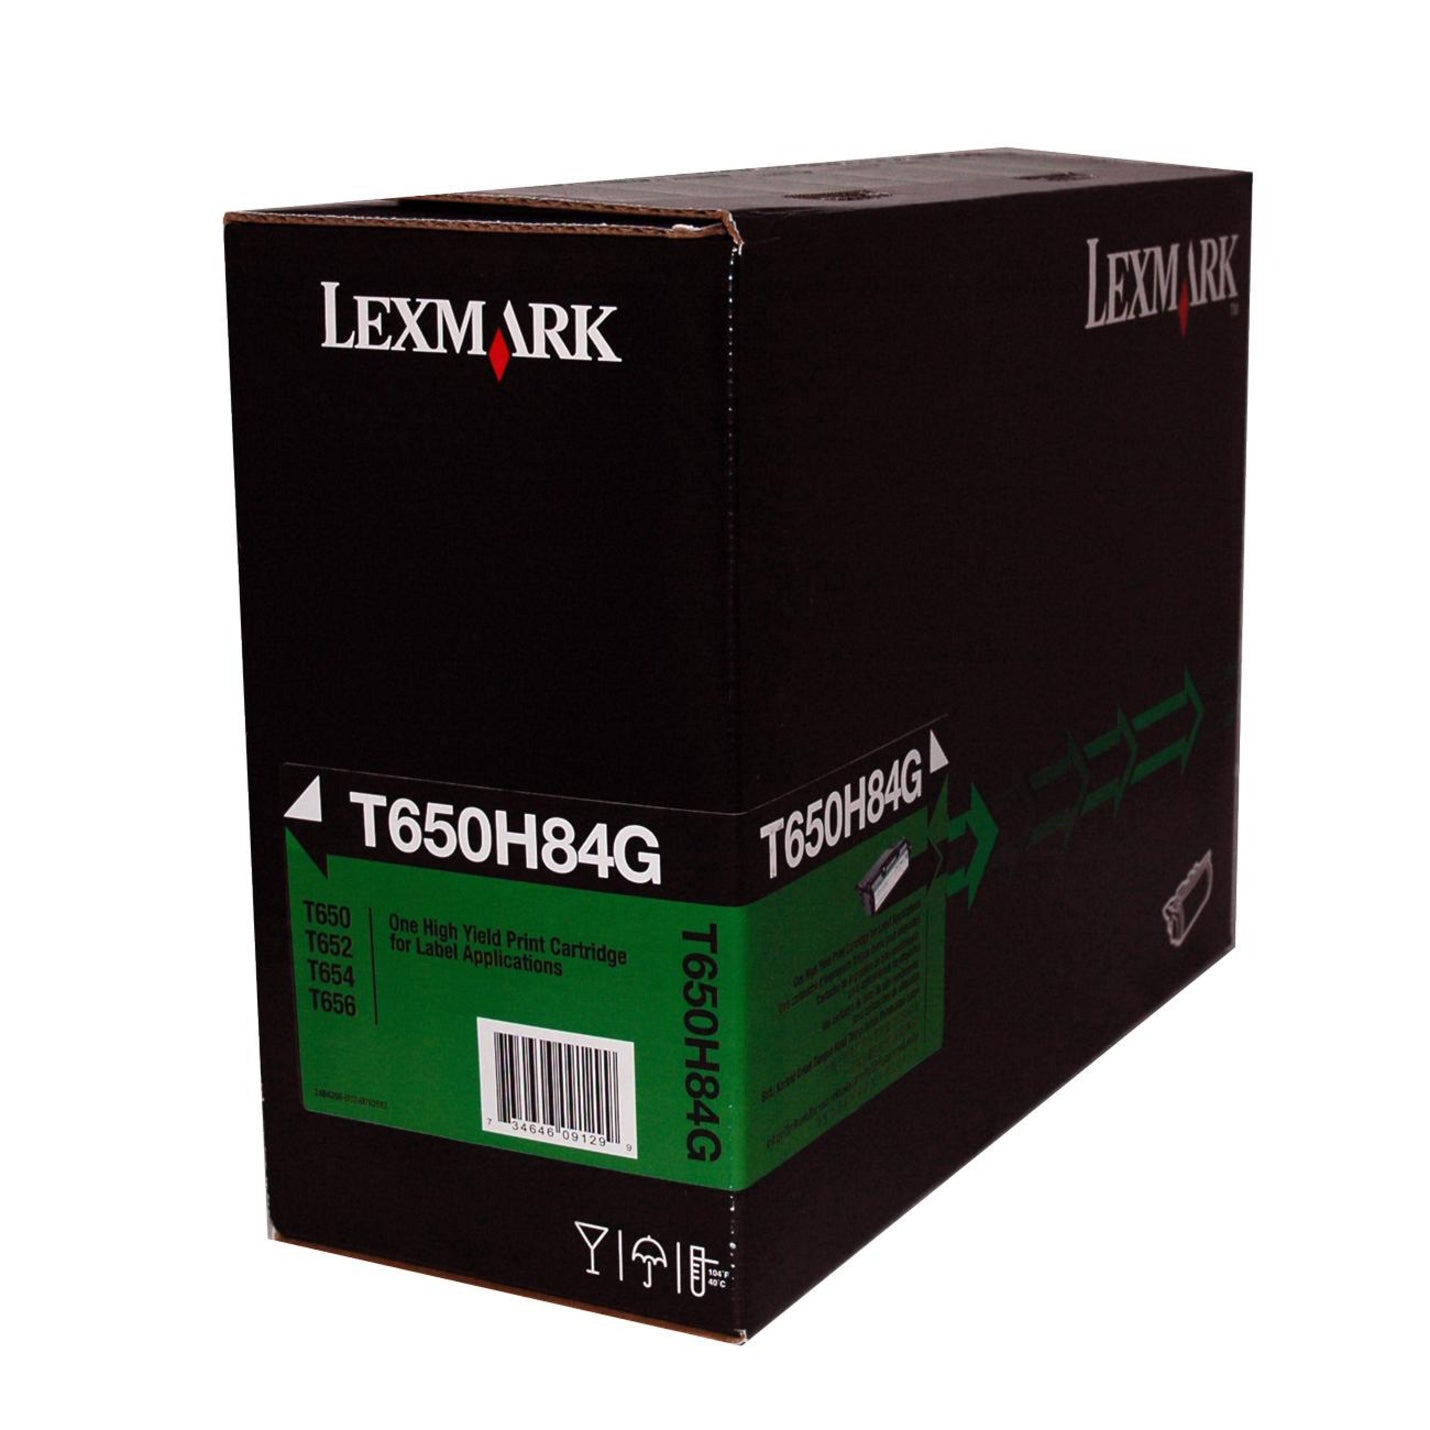 Lexmark T650H84G High Yield Black Toner Cartridge - Genuine Lexmark Toner for Laser Printers